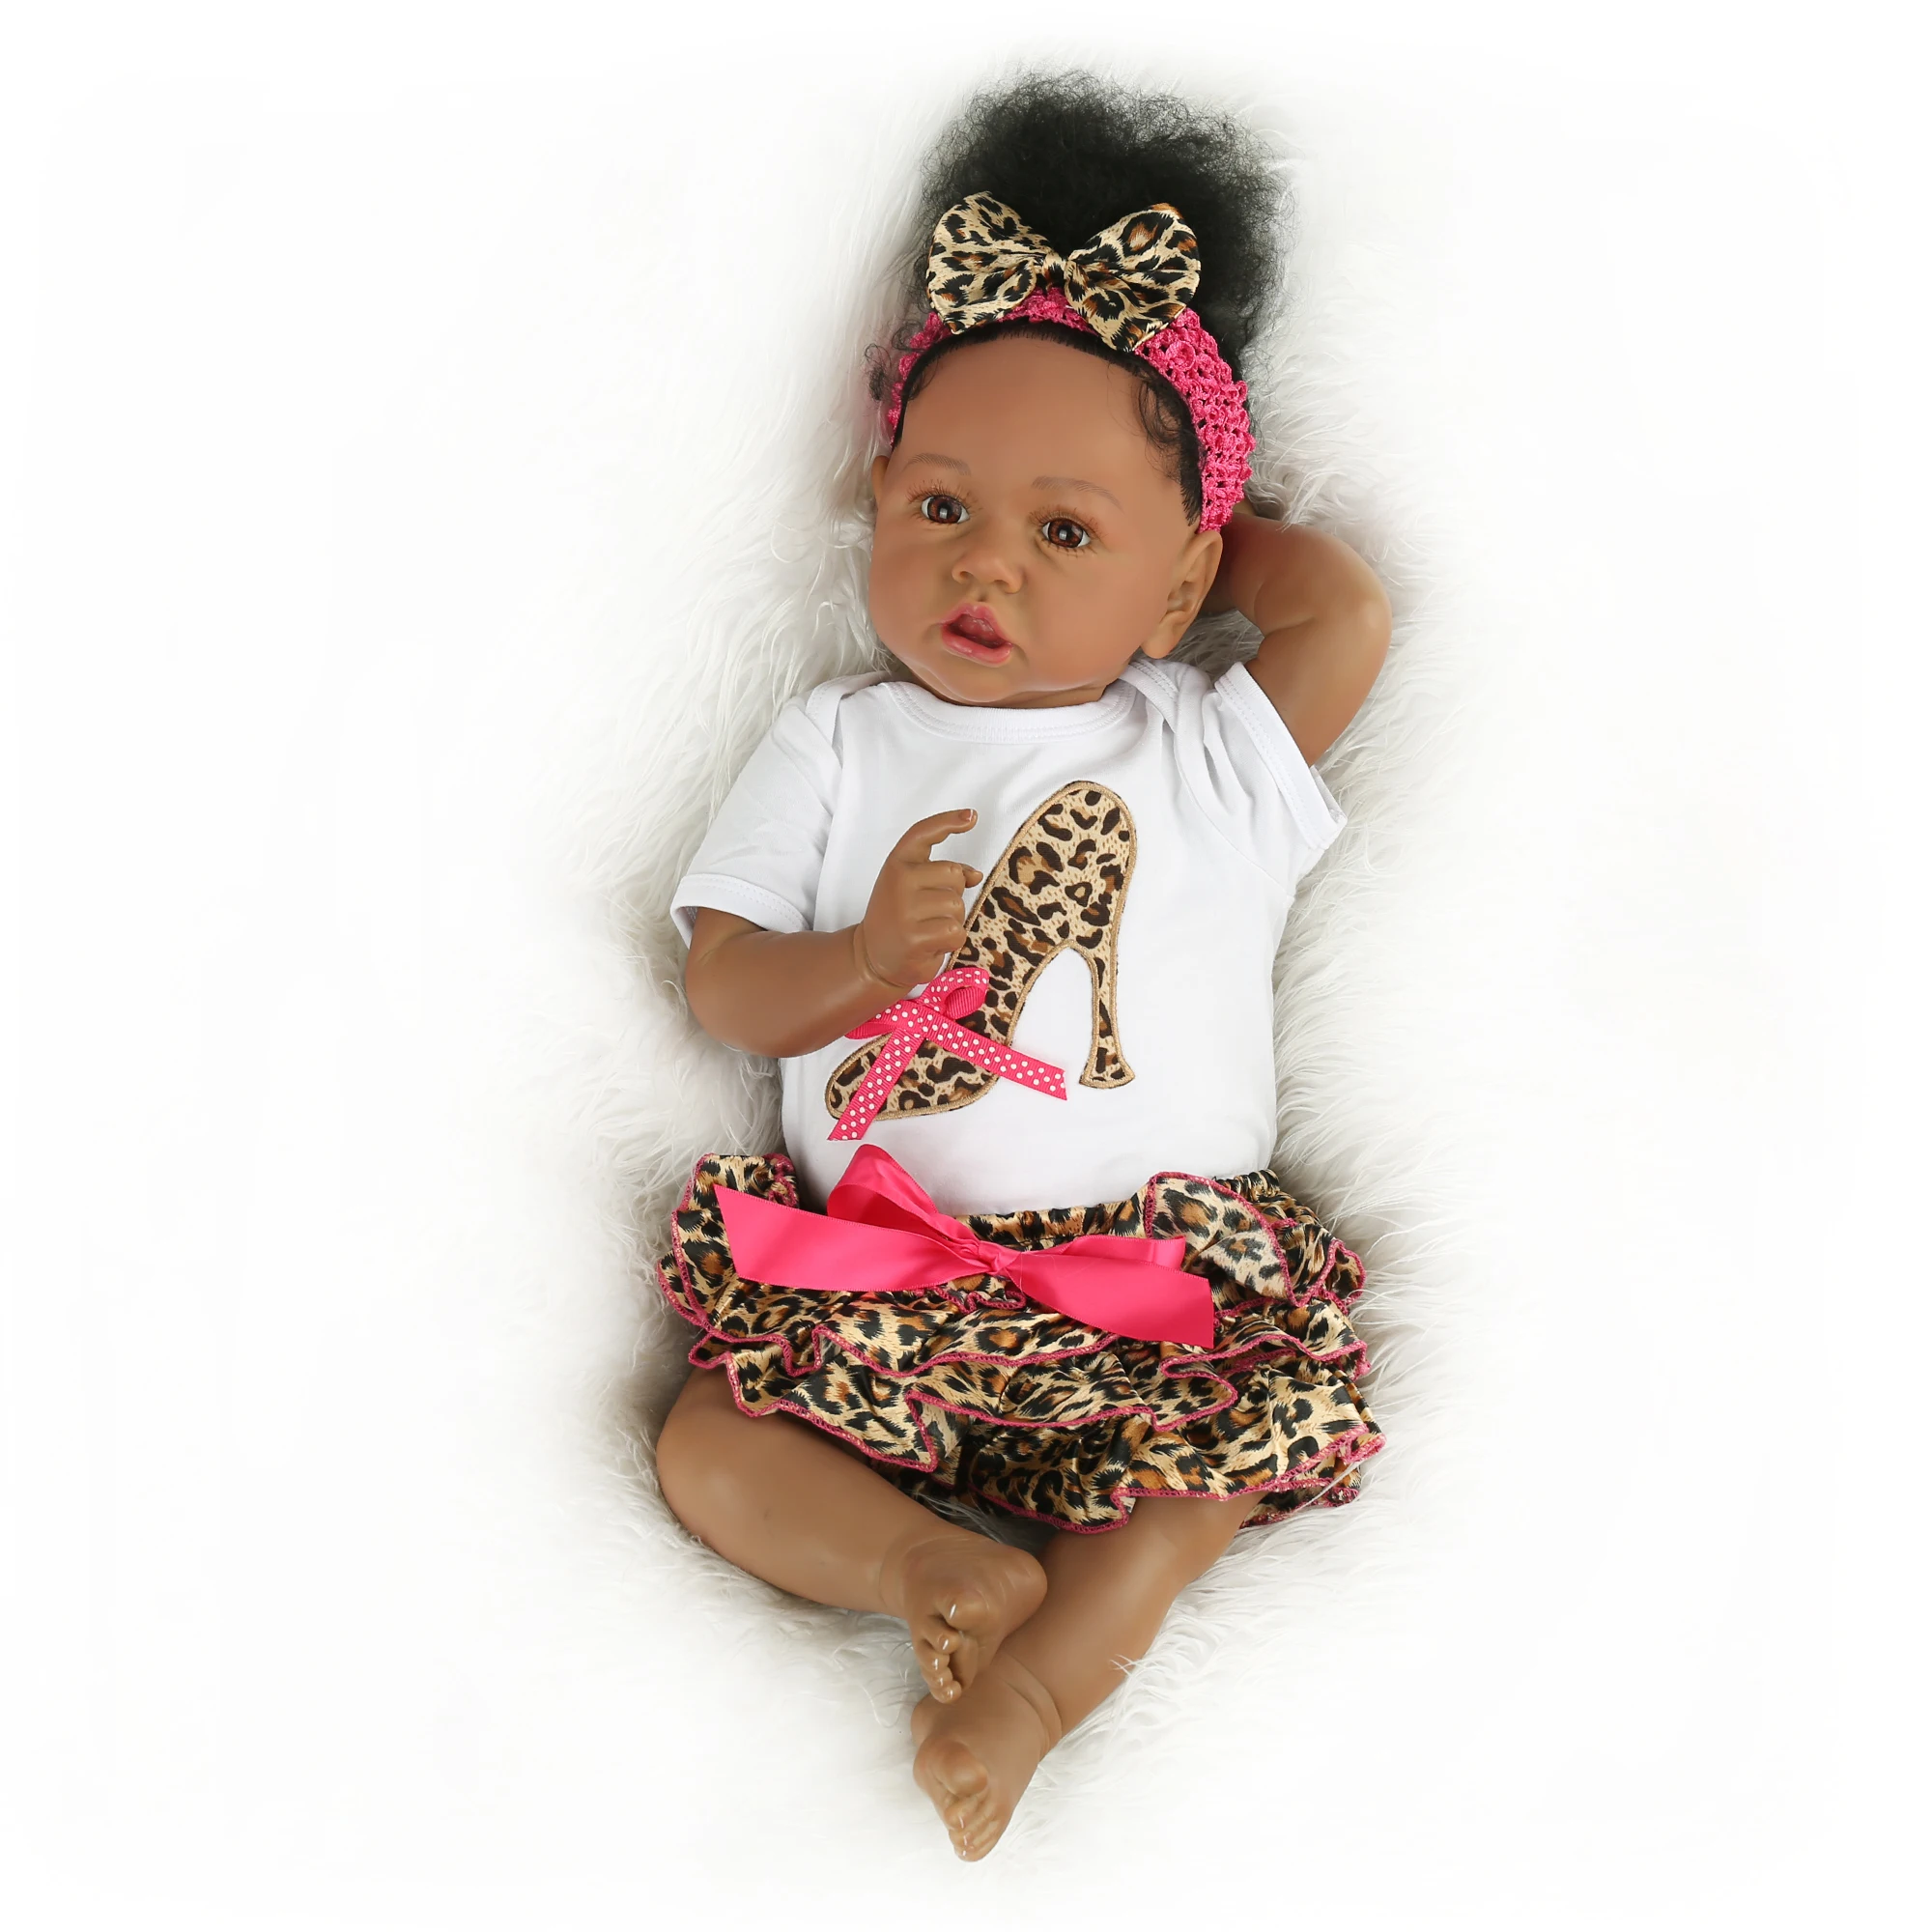 アフリカ系アメリカ人の赤ちゃん人形黒い肌サスキア生まれ変わった幼児の女の子の赤ちゃん人形リアルな本物のタッチ全身シリコン Buy フルビニールボディ 人形 リボーンベビードール Saskiaリボーン Product On Alibaba Com